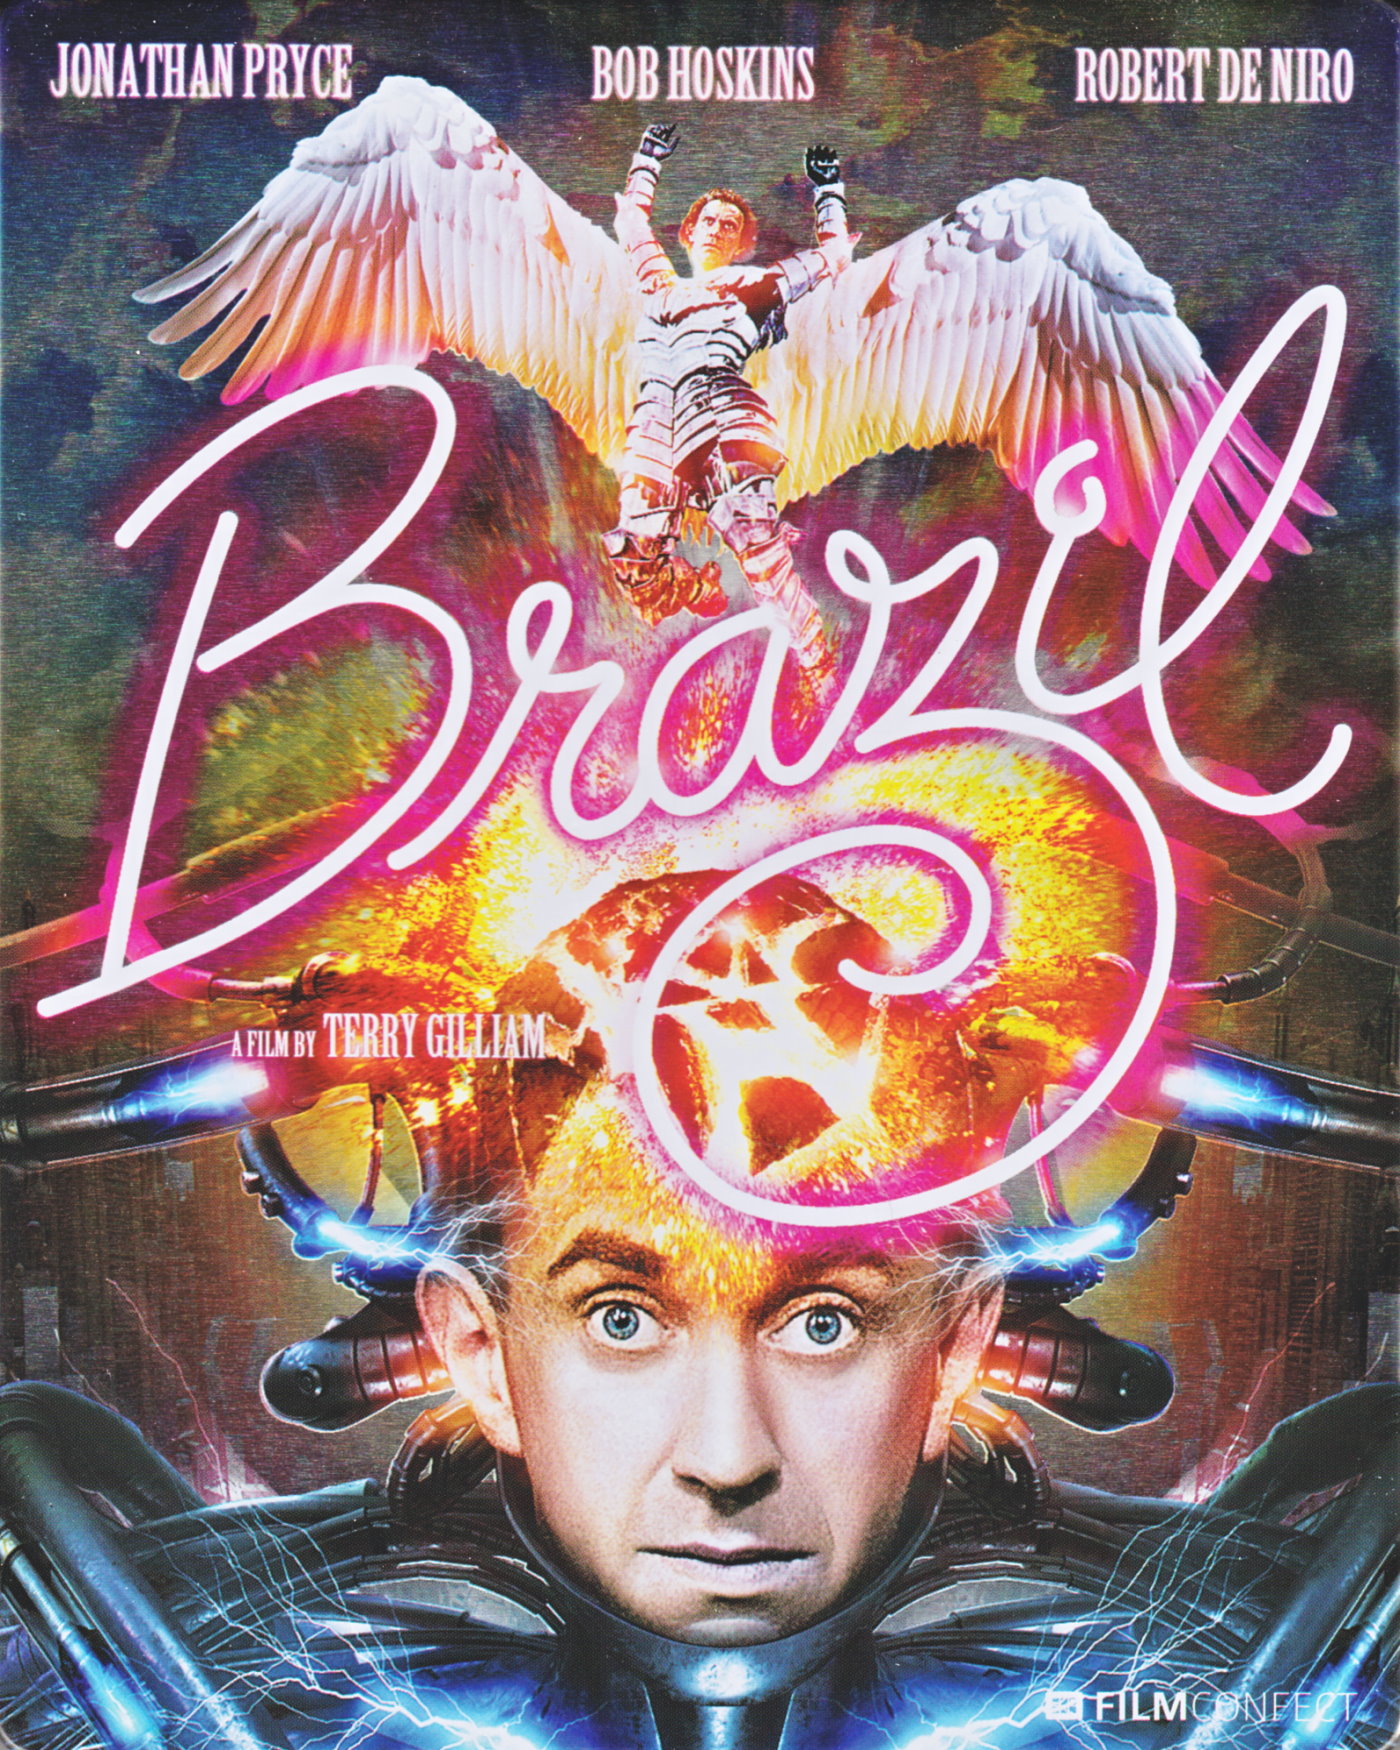 Cover - Brazil.jpg